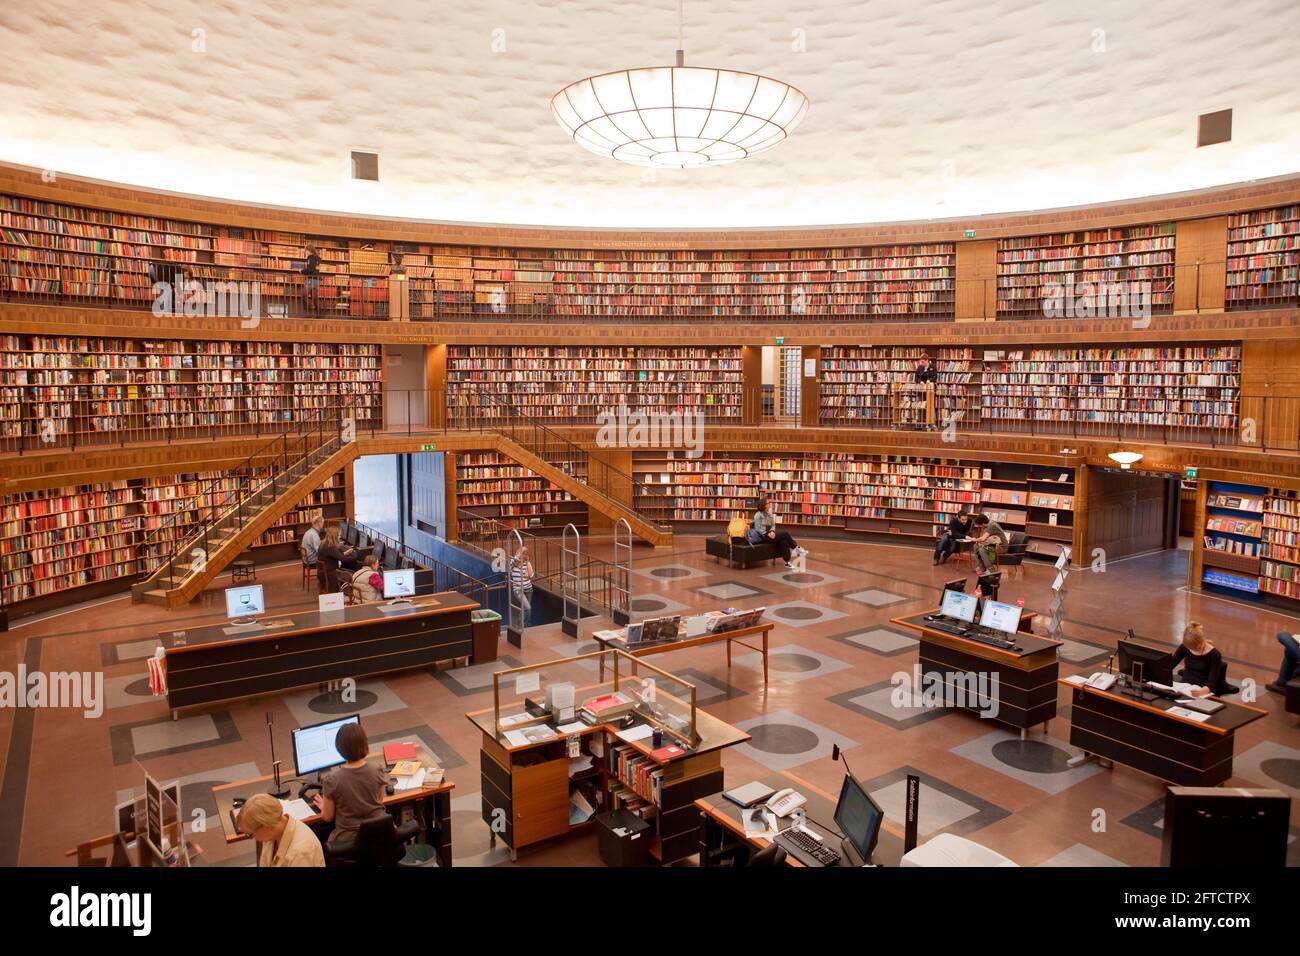 Suède, Stockholm - intérieur de la bibliothèque de la ville de Stockholm. Banque D'Images